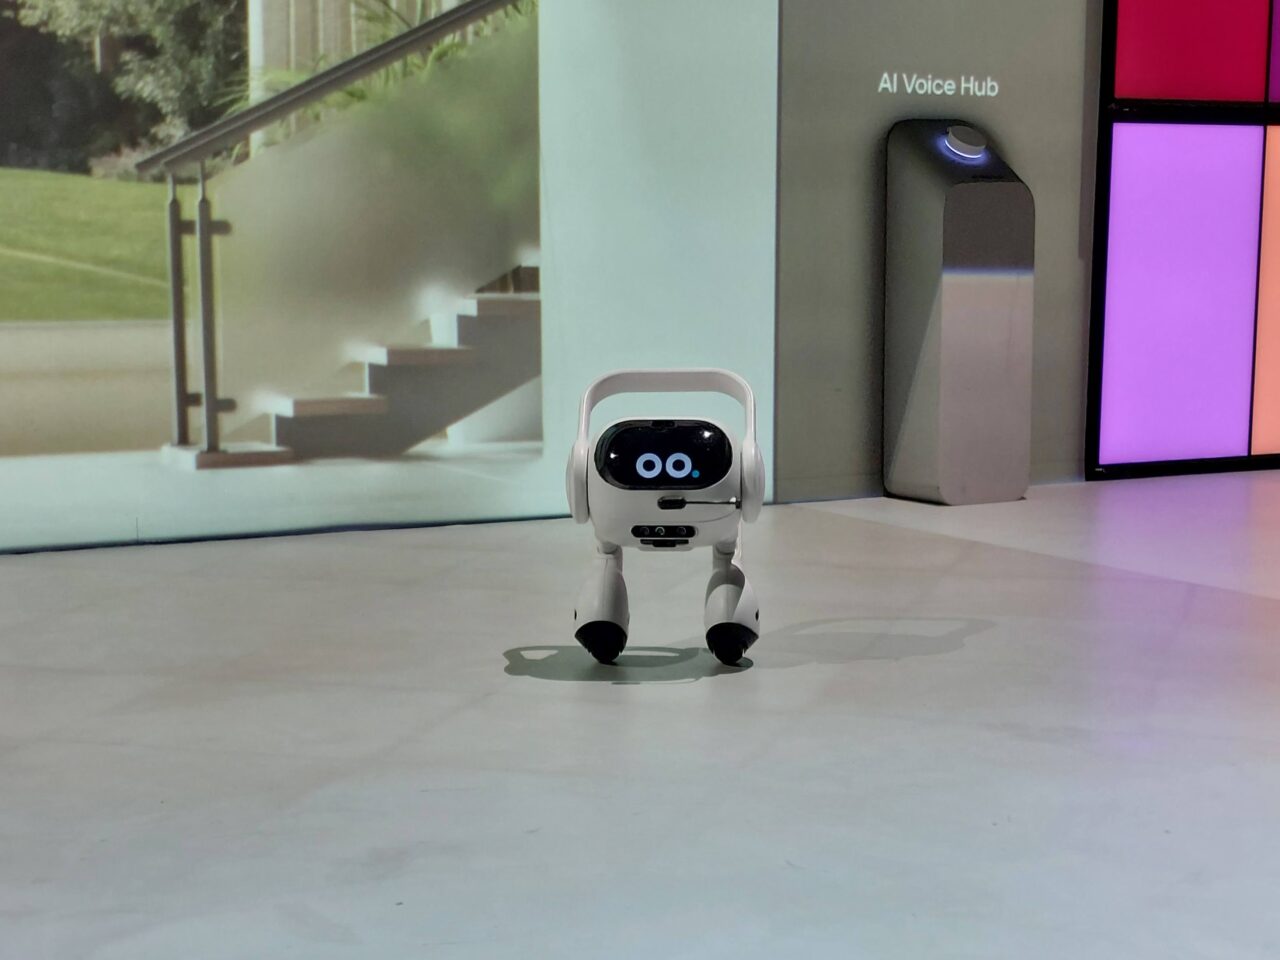 Mały biały robot LG AI Agent z dwoma czarnymi oczami na cyfrowym wyświetlaczu stoi na jasnej posadzce przed kolorowymi ekranami i urządzeniem oznaczonym napisem "AI Voice Hub".